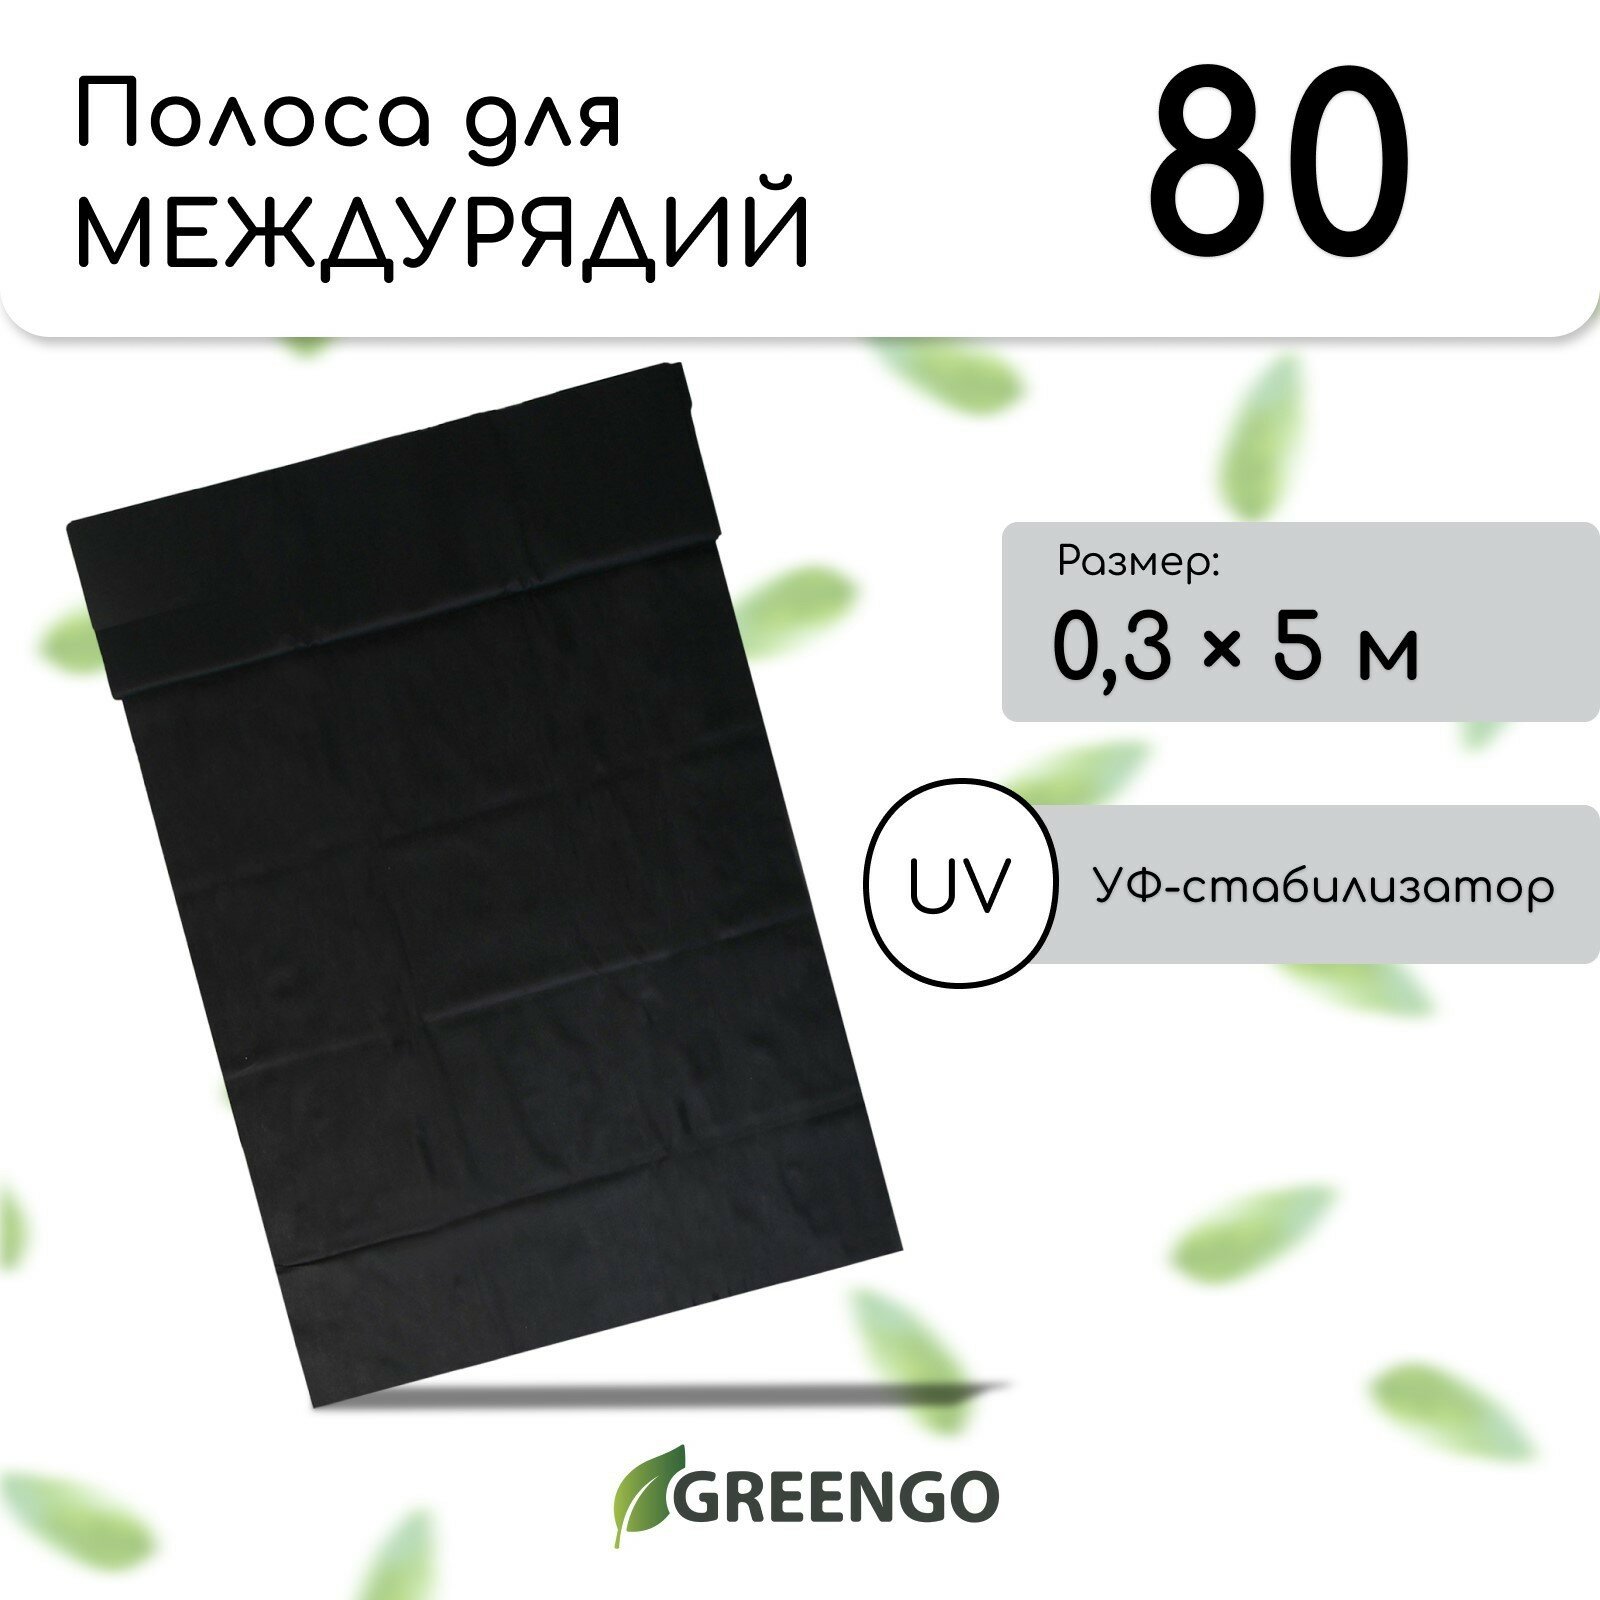 Полоса защитная для междурядий 5 × 03 плотность 80 г/м² с УФ-стабилизатором чёрная Greengo Эконом 20%